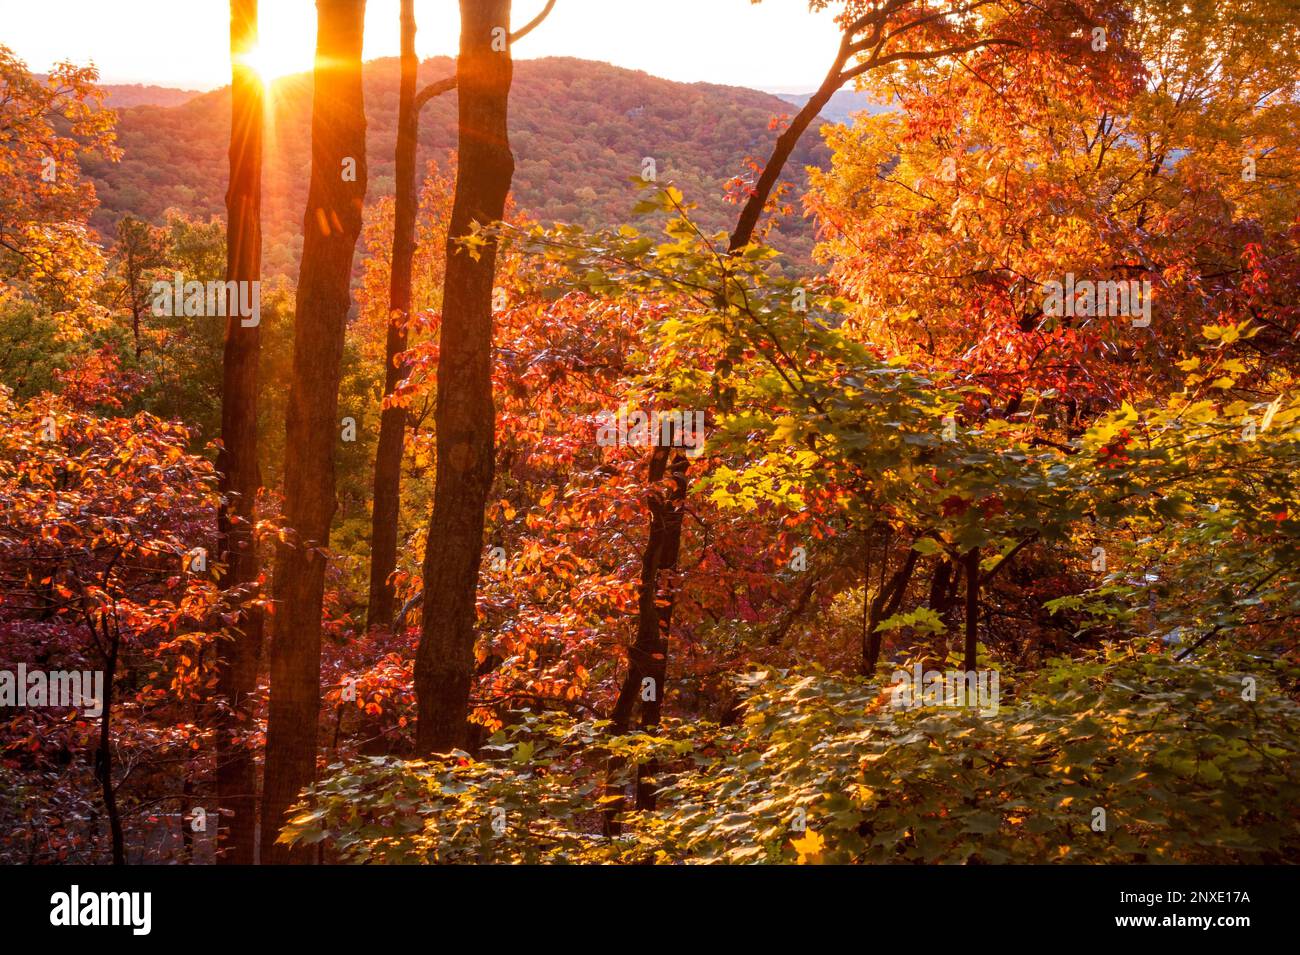 Colorful fall foliage at sunrise in North Georgia's Blue Ridge Mountains at Big Canoe. (USA) Stock Photo